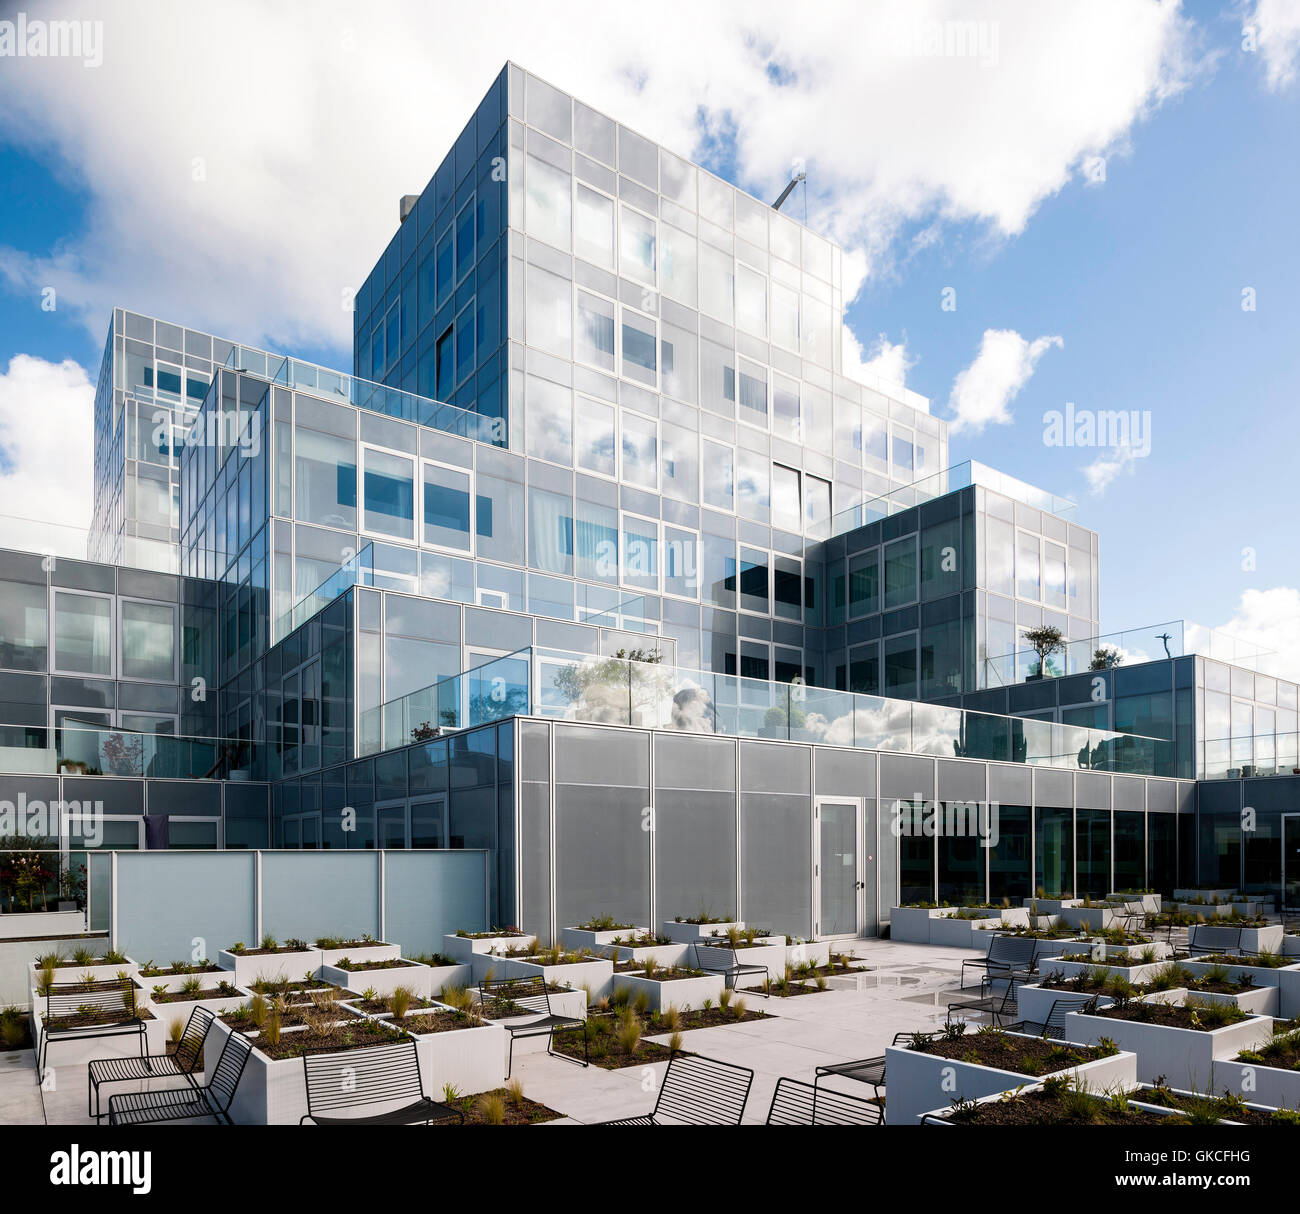 Vista di modulare di nuova costruzione come visto dalla terrazza. Timmerhuis, Rotterdam, Paesi Bassi. Architetto: OMA Rem Koolhaas, 2015. Foto Stock